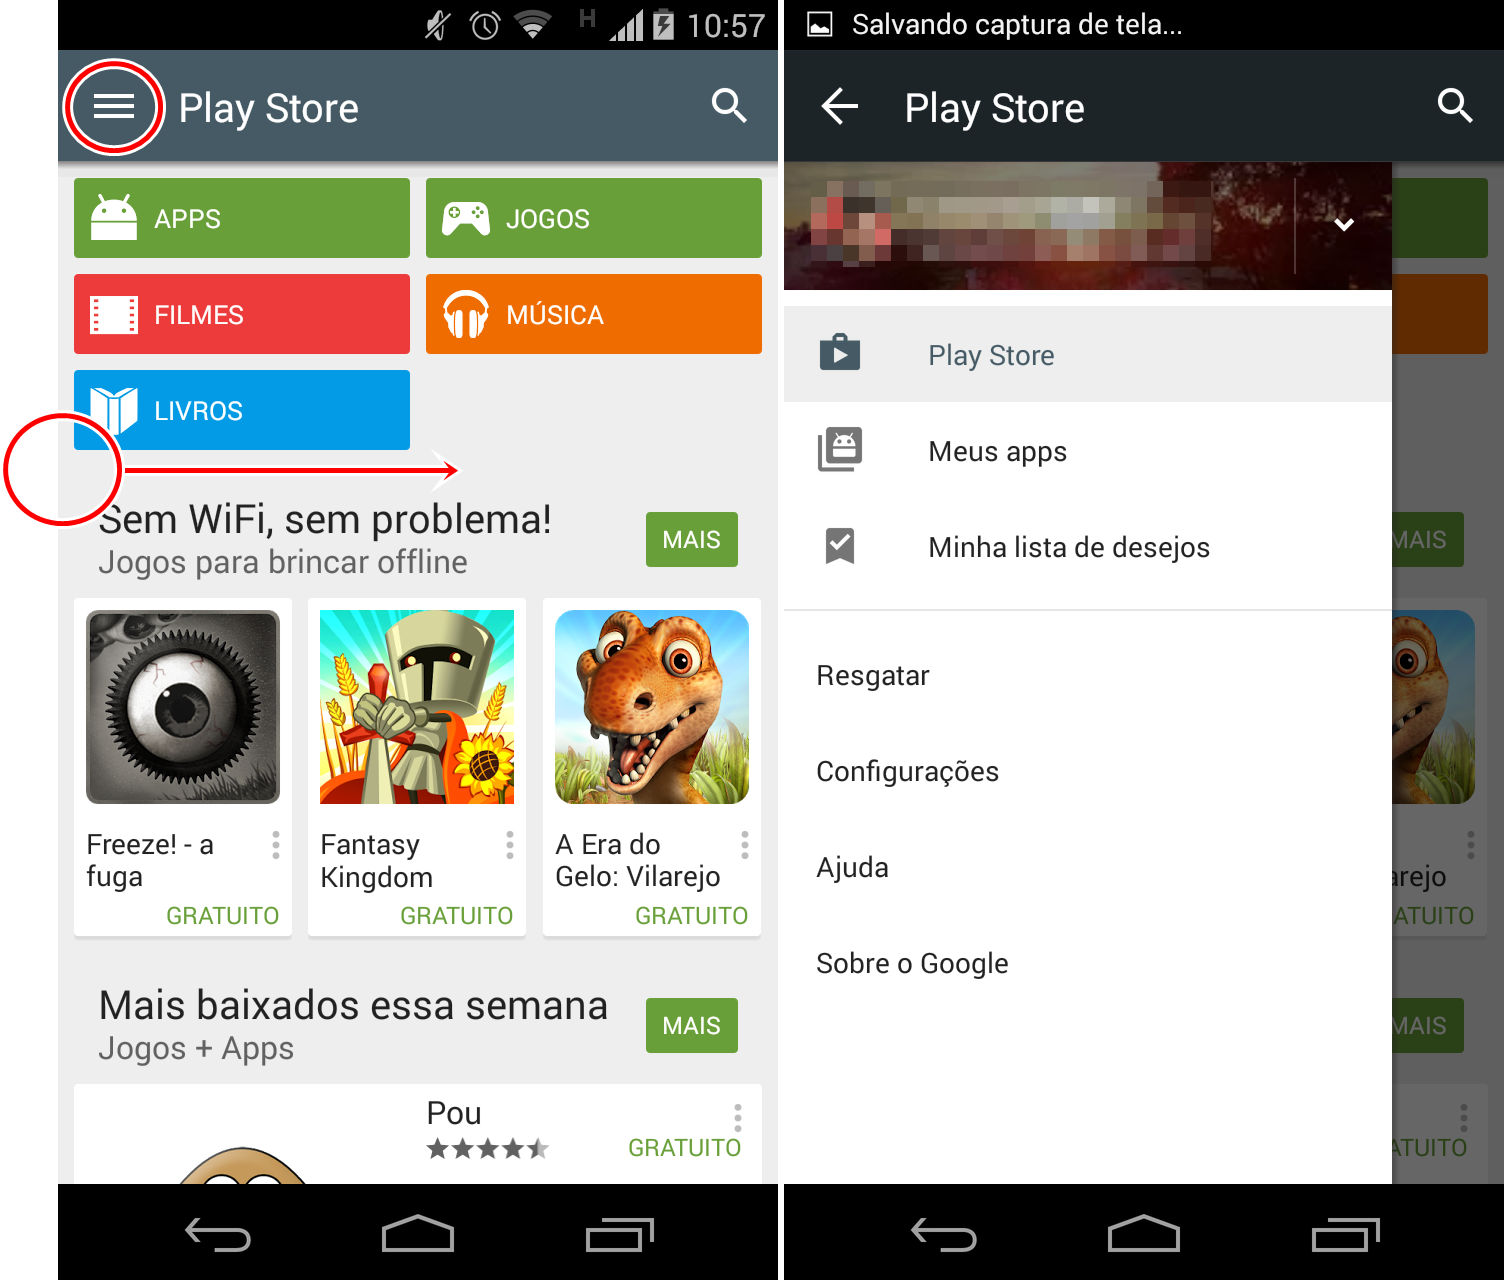 AAJOGO Casa de gelo - Apps on Google Play